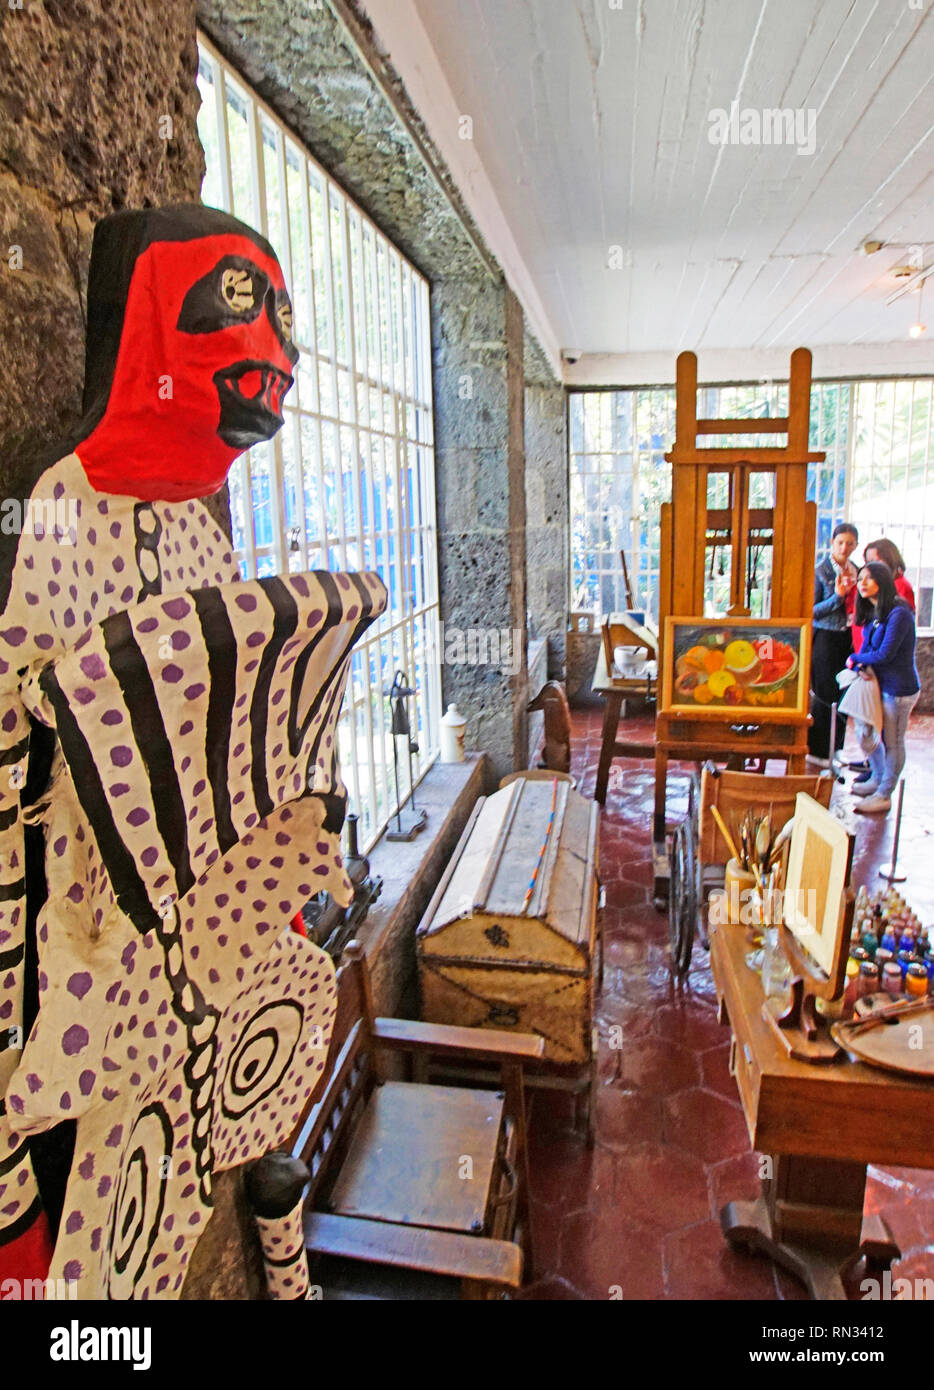 Frida Kahlo Museum, Workshop mit Staffelei, Rollstuhl, Malerei liefert, und einer ihrer Pappmaché Volkskunst Skulpturen auf der linken Seite. Stockfoto